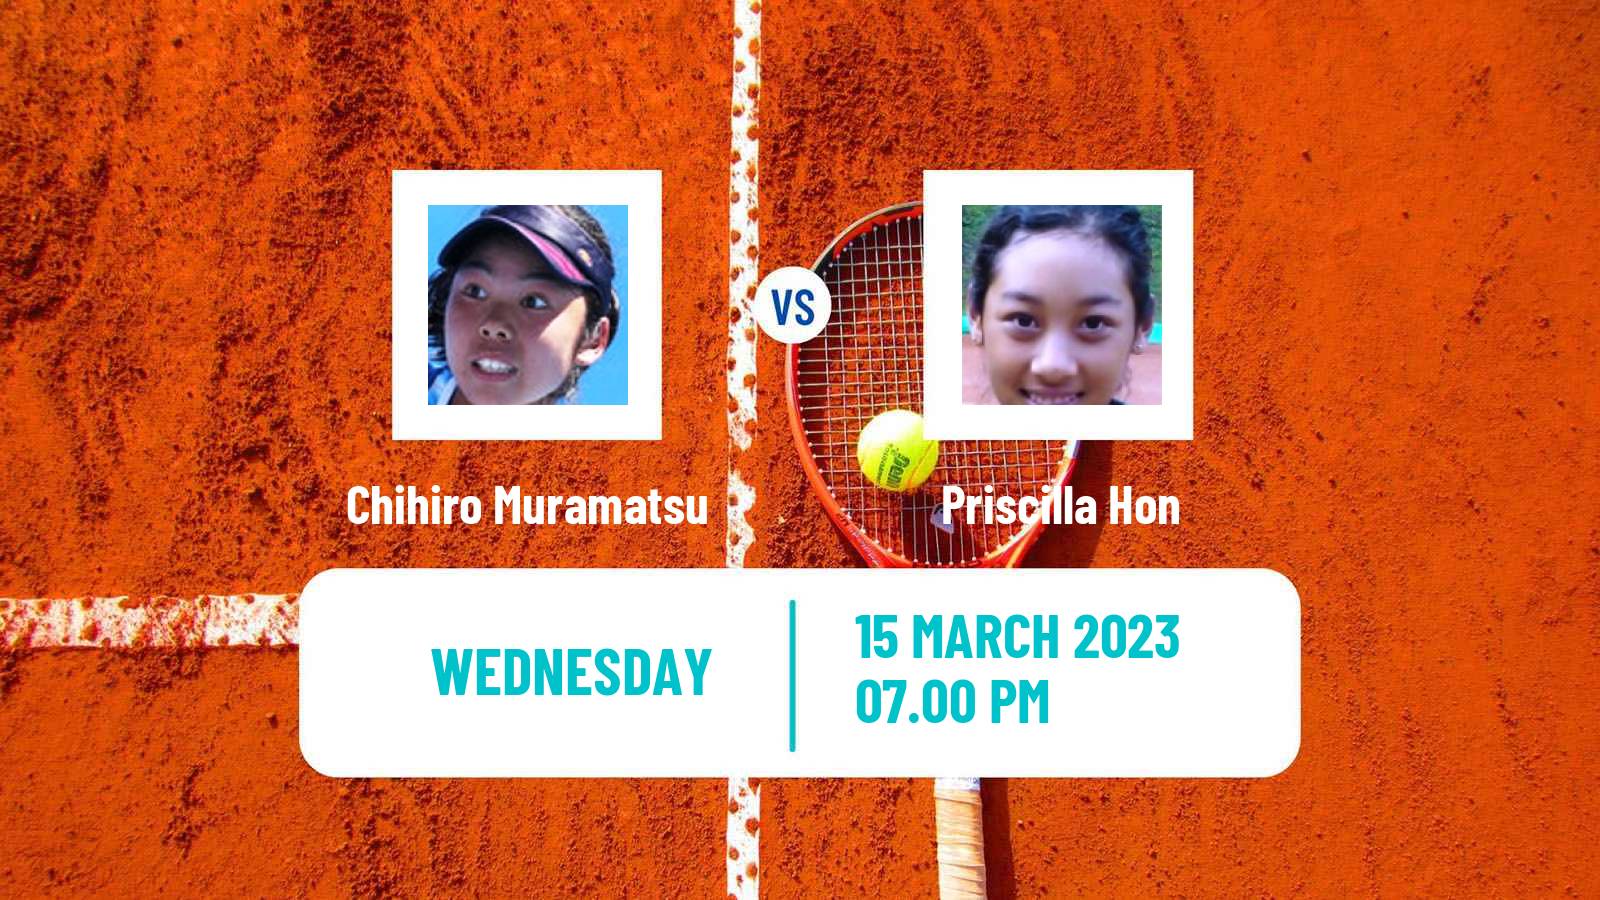 Tennis ITF Tournaments Chihiro Muramatsu - Priscilla Hon